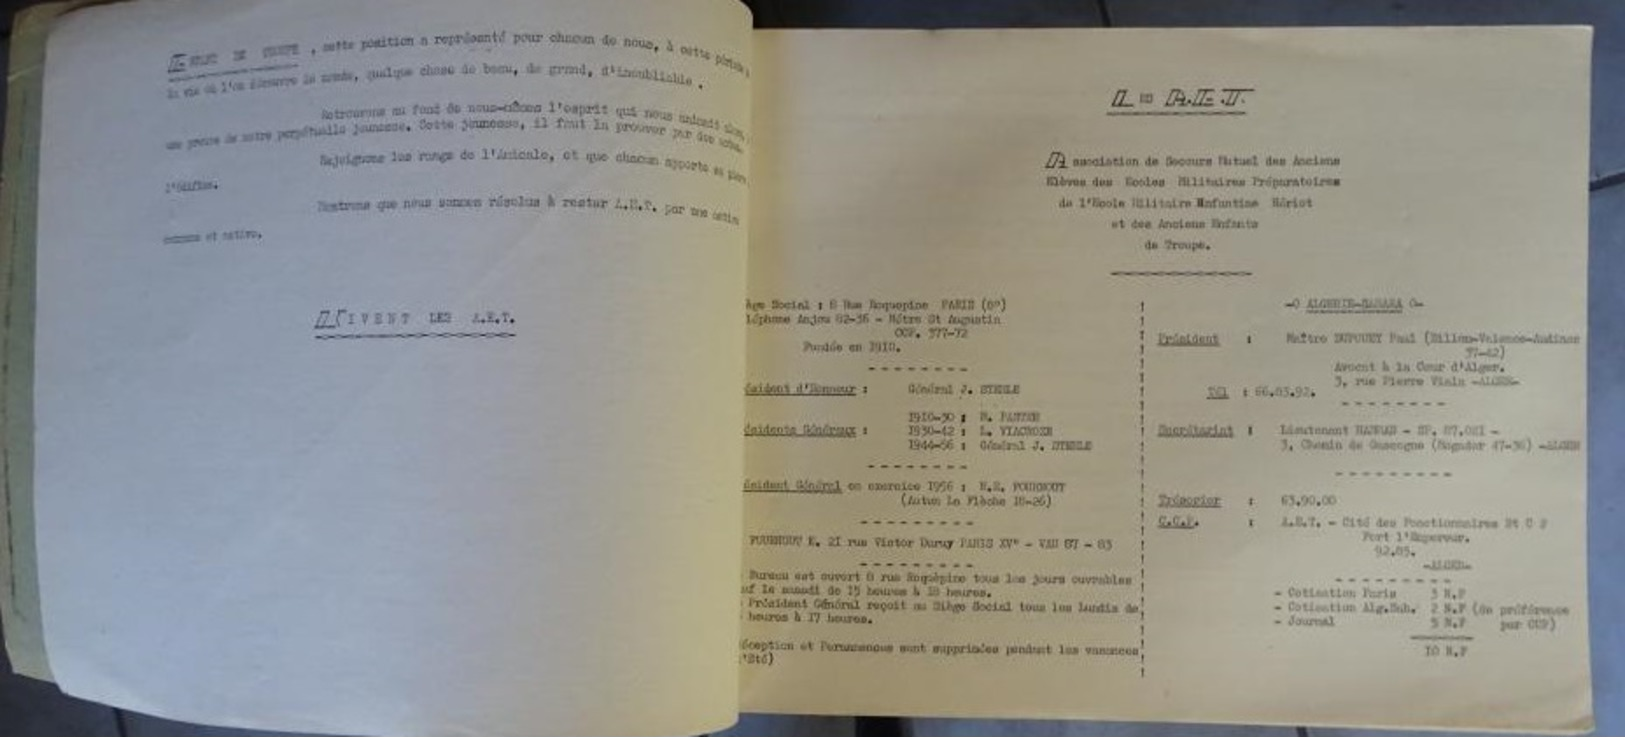 Annuaire A.E.T. Association Mutuelle Des Anciens élèves Des écoles Militaires Préparatoires Algérie Sahara 1961 - Documentos